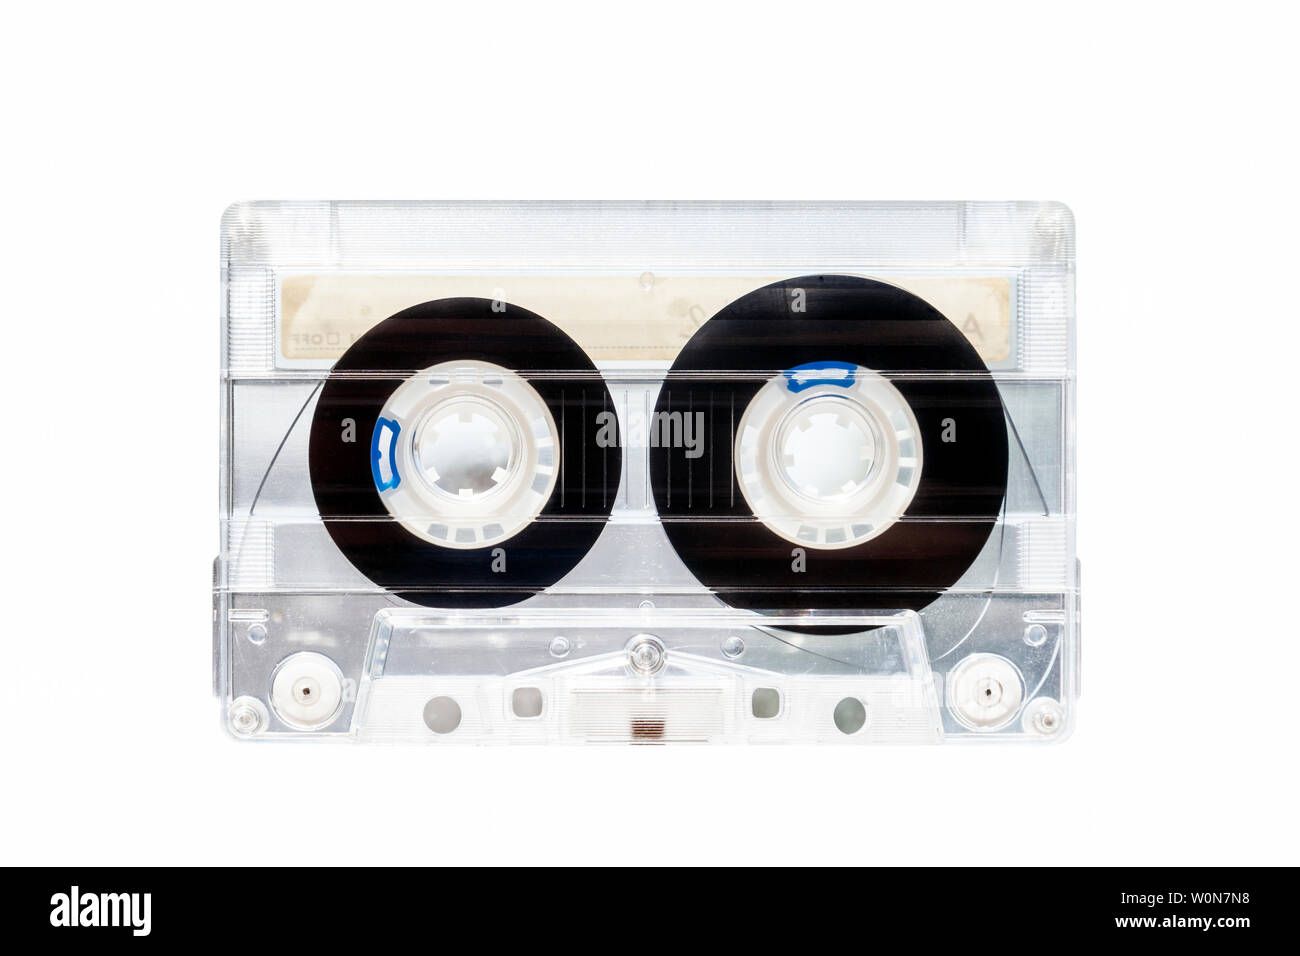 C90 de plástico transparente cinta de cassette de audio compacto isoltaed contra un fondo blanco. Foto de stock